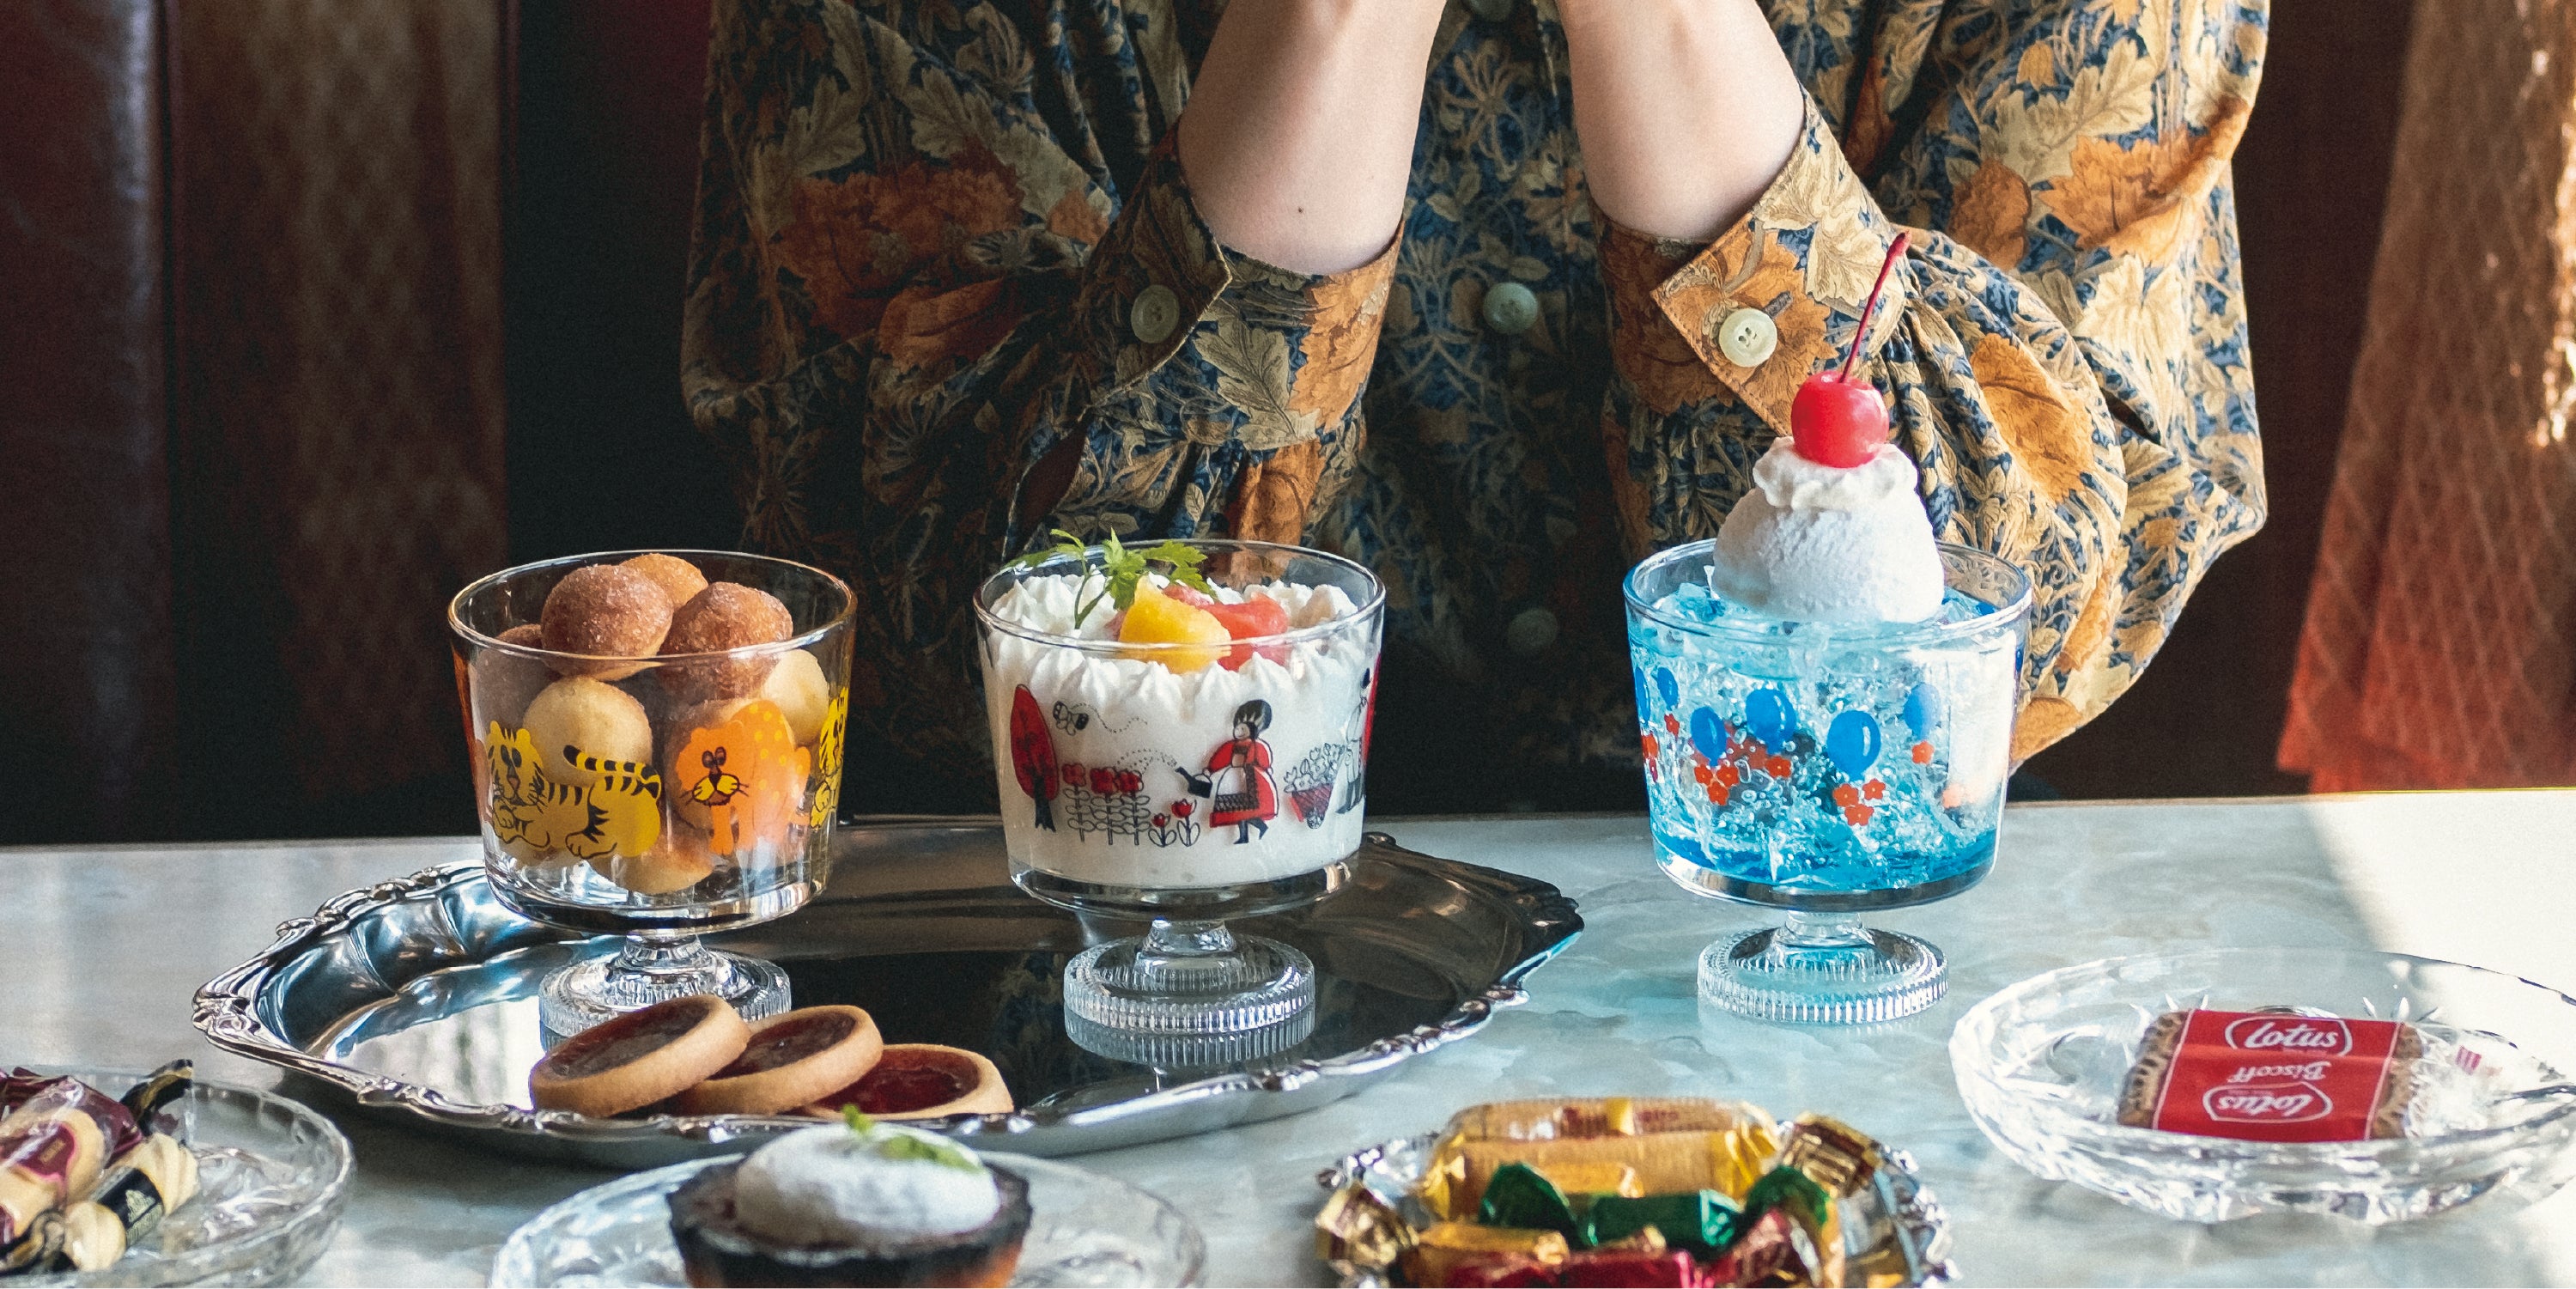 昭和 レトロ ガラス 食器 アデリア デザートカップ 風船 – アデリアレトロオフィシャルショップ